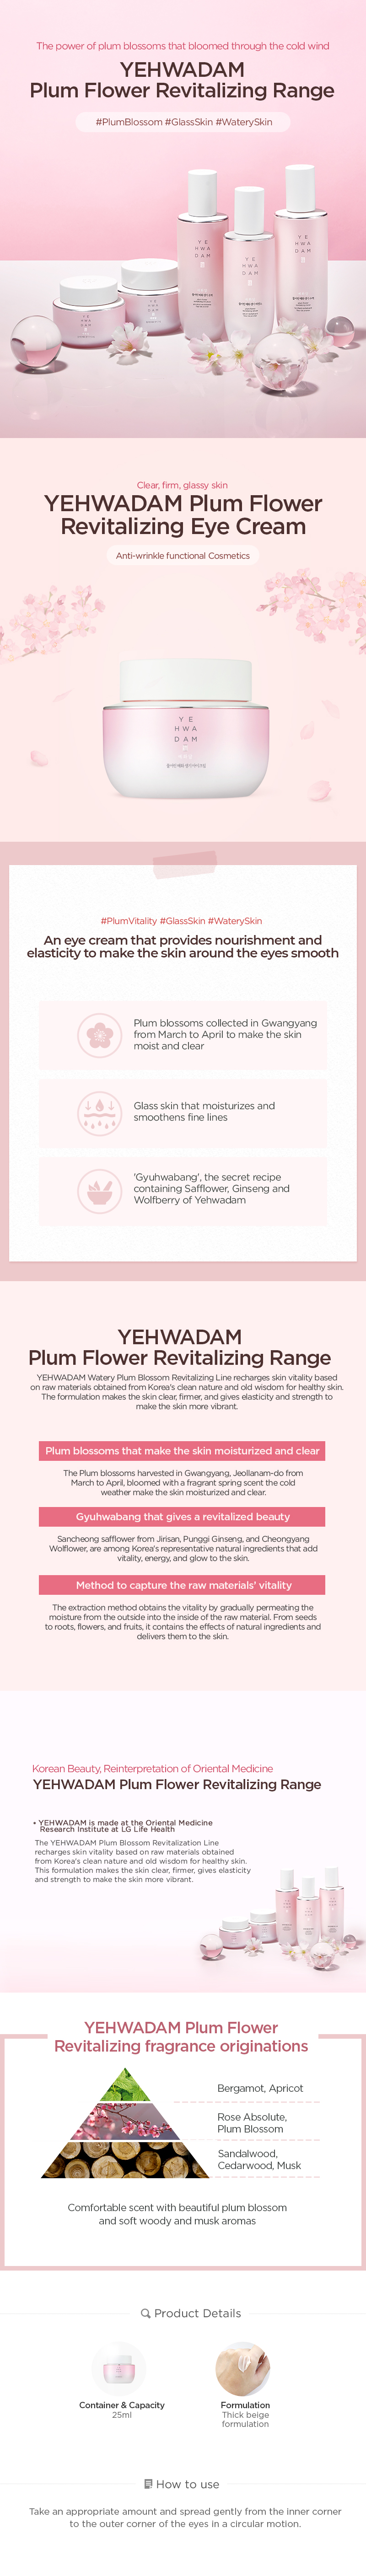 Yehwadam Plum Flower Revitalizing Eye Cream